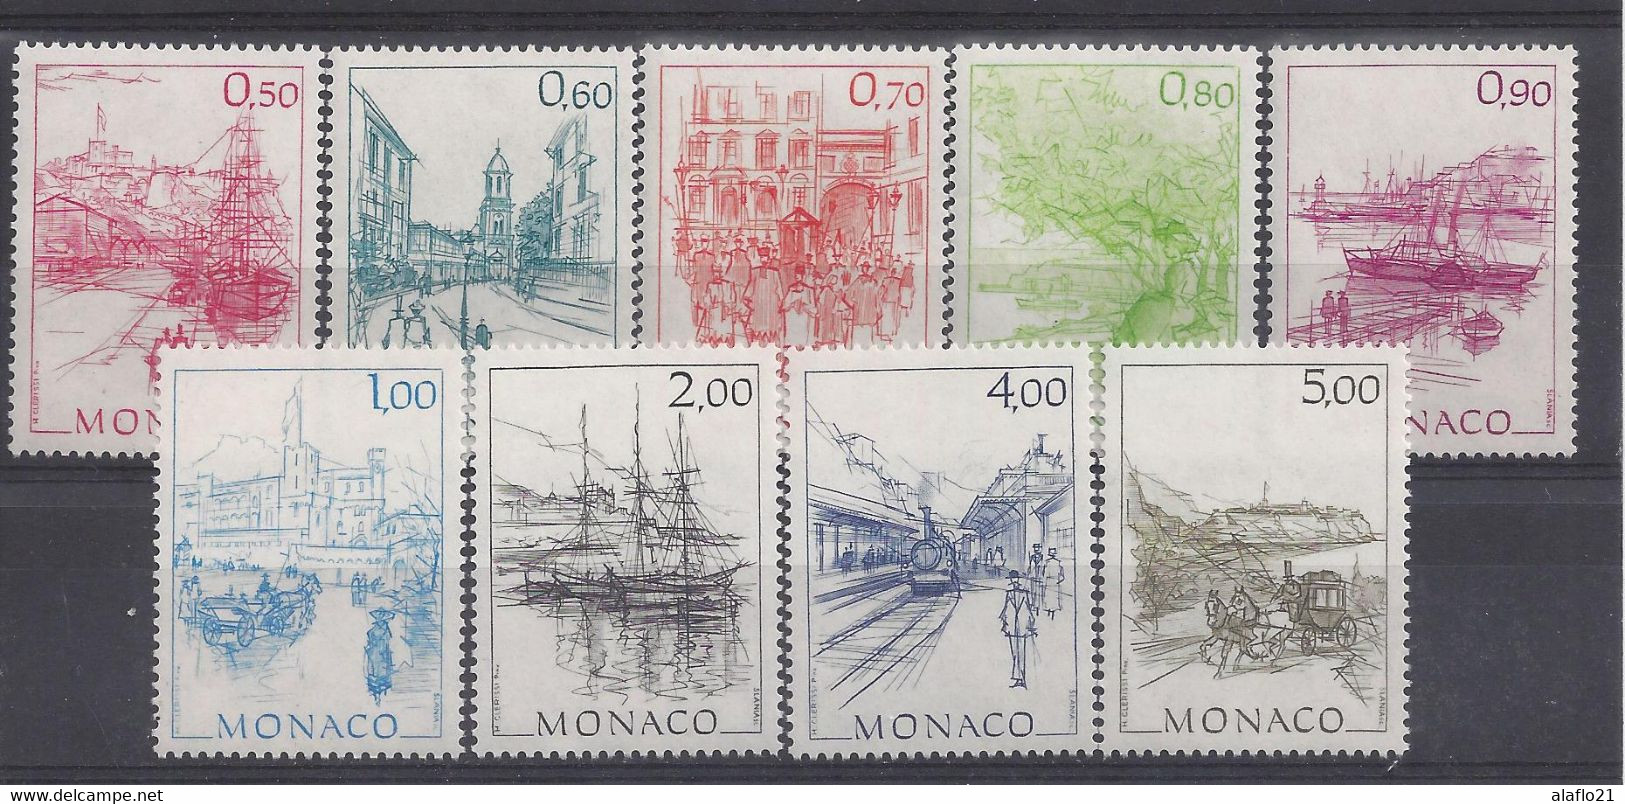 MONACO - Yvert N° 1510 à 1518 - MONACO AUTREFOIS - NEUFS SANS CHARNIERE - Unused Stamps